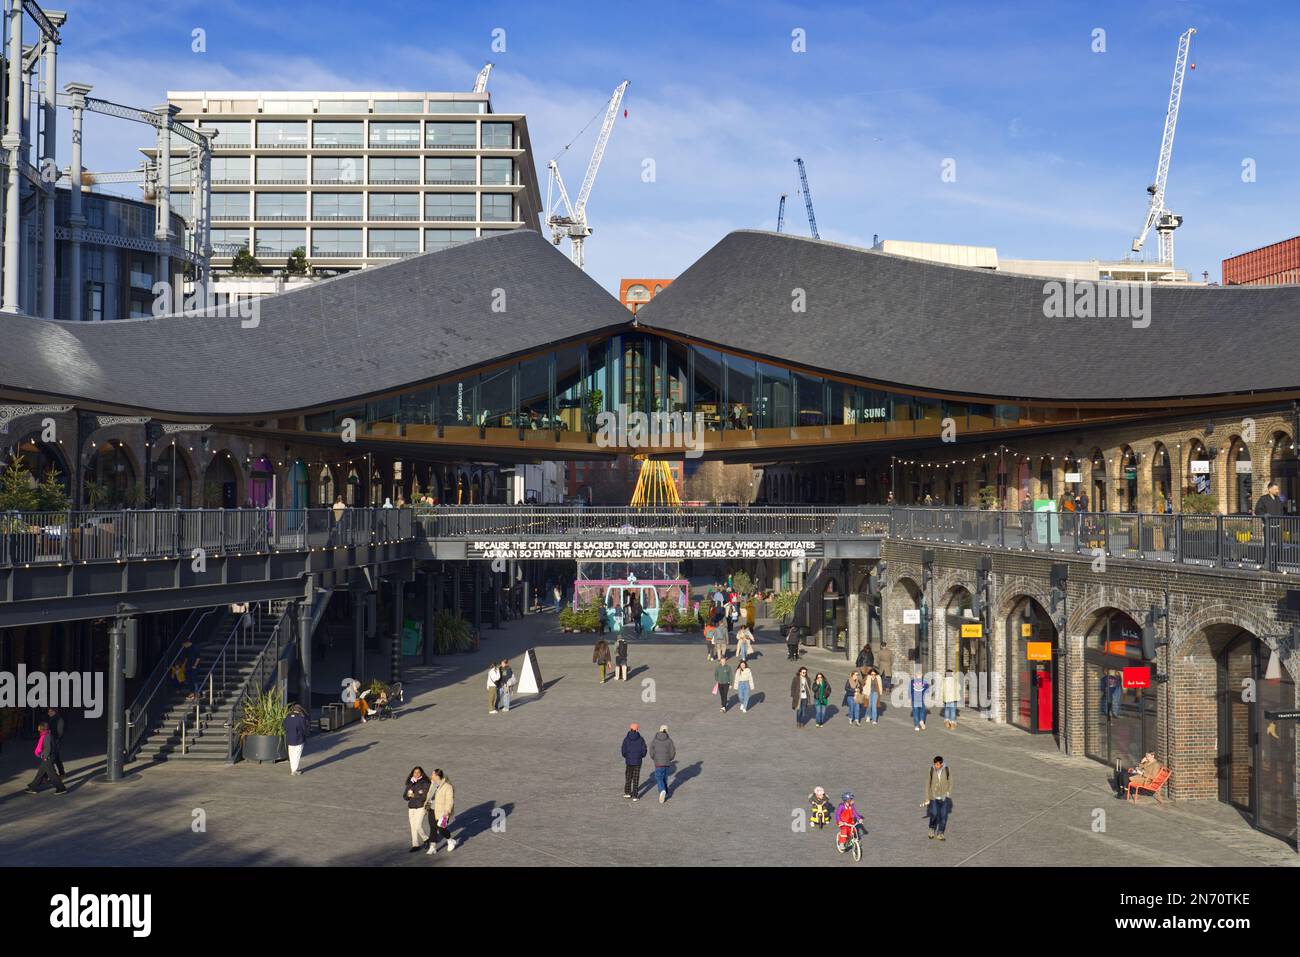 La gente che fa shopping presso lo spazio dei negozi e dei ristoranti di Coal Drops Yard, King's Cross, Londra, Inghilterra, Regno Unito Foto Stock